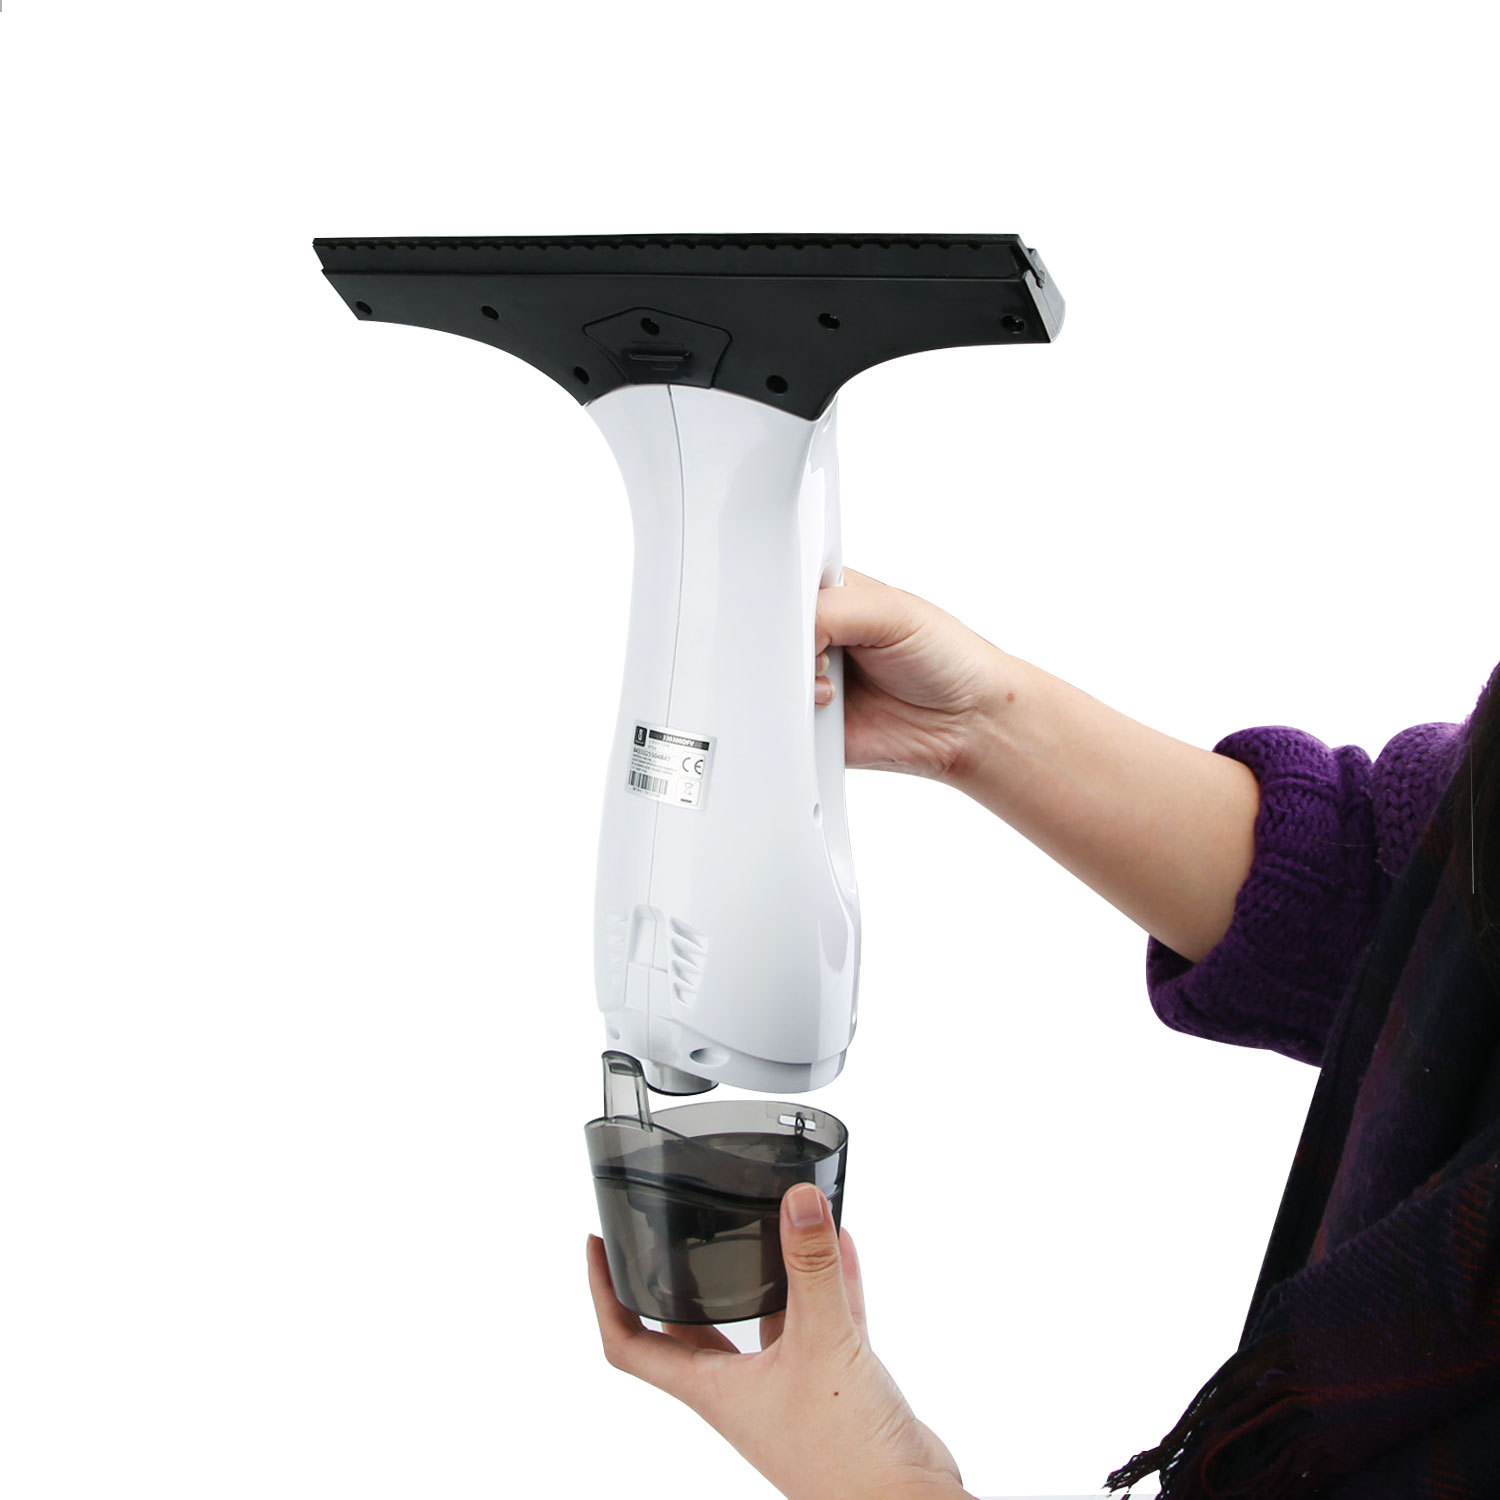 Aigostar Penguin 30DFV – 12W Aspirador limpiacristales especialmente diseñado para limpiar ventanas. Inalámbrico, incluye vaporizador, boquilla con paño de microfibra y aspiradoras intercambiables